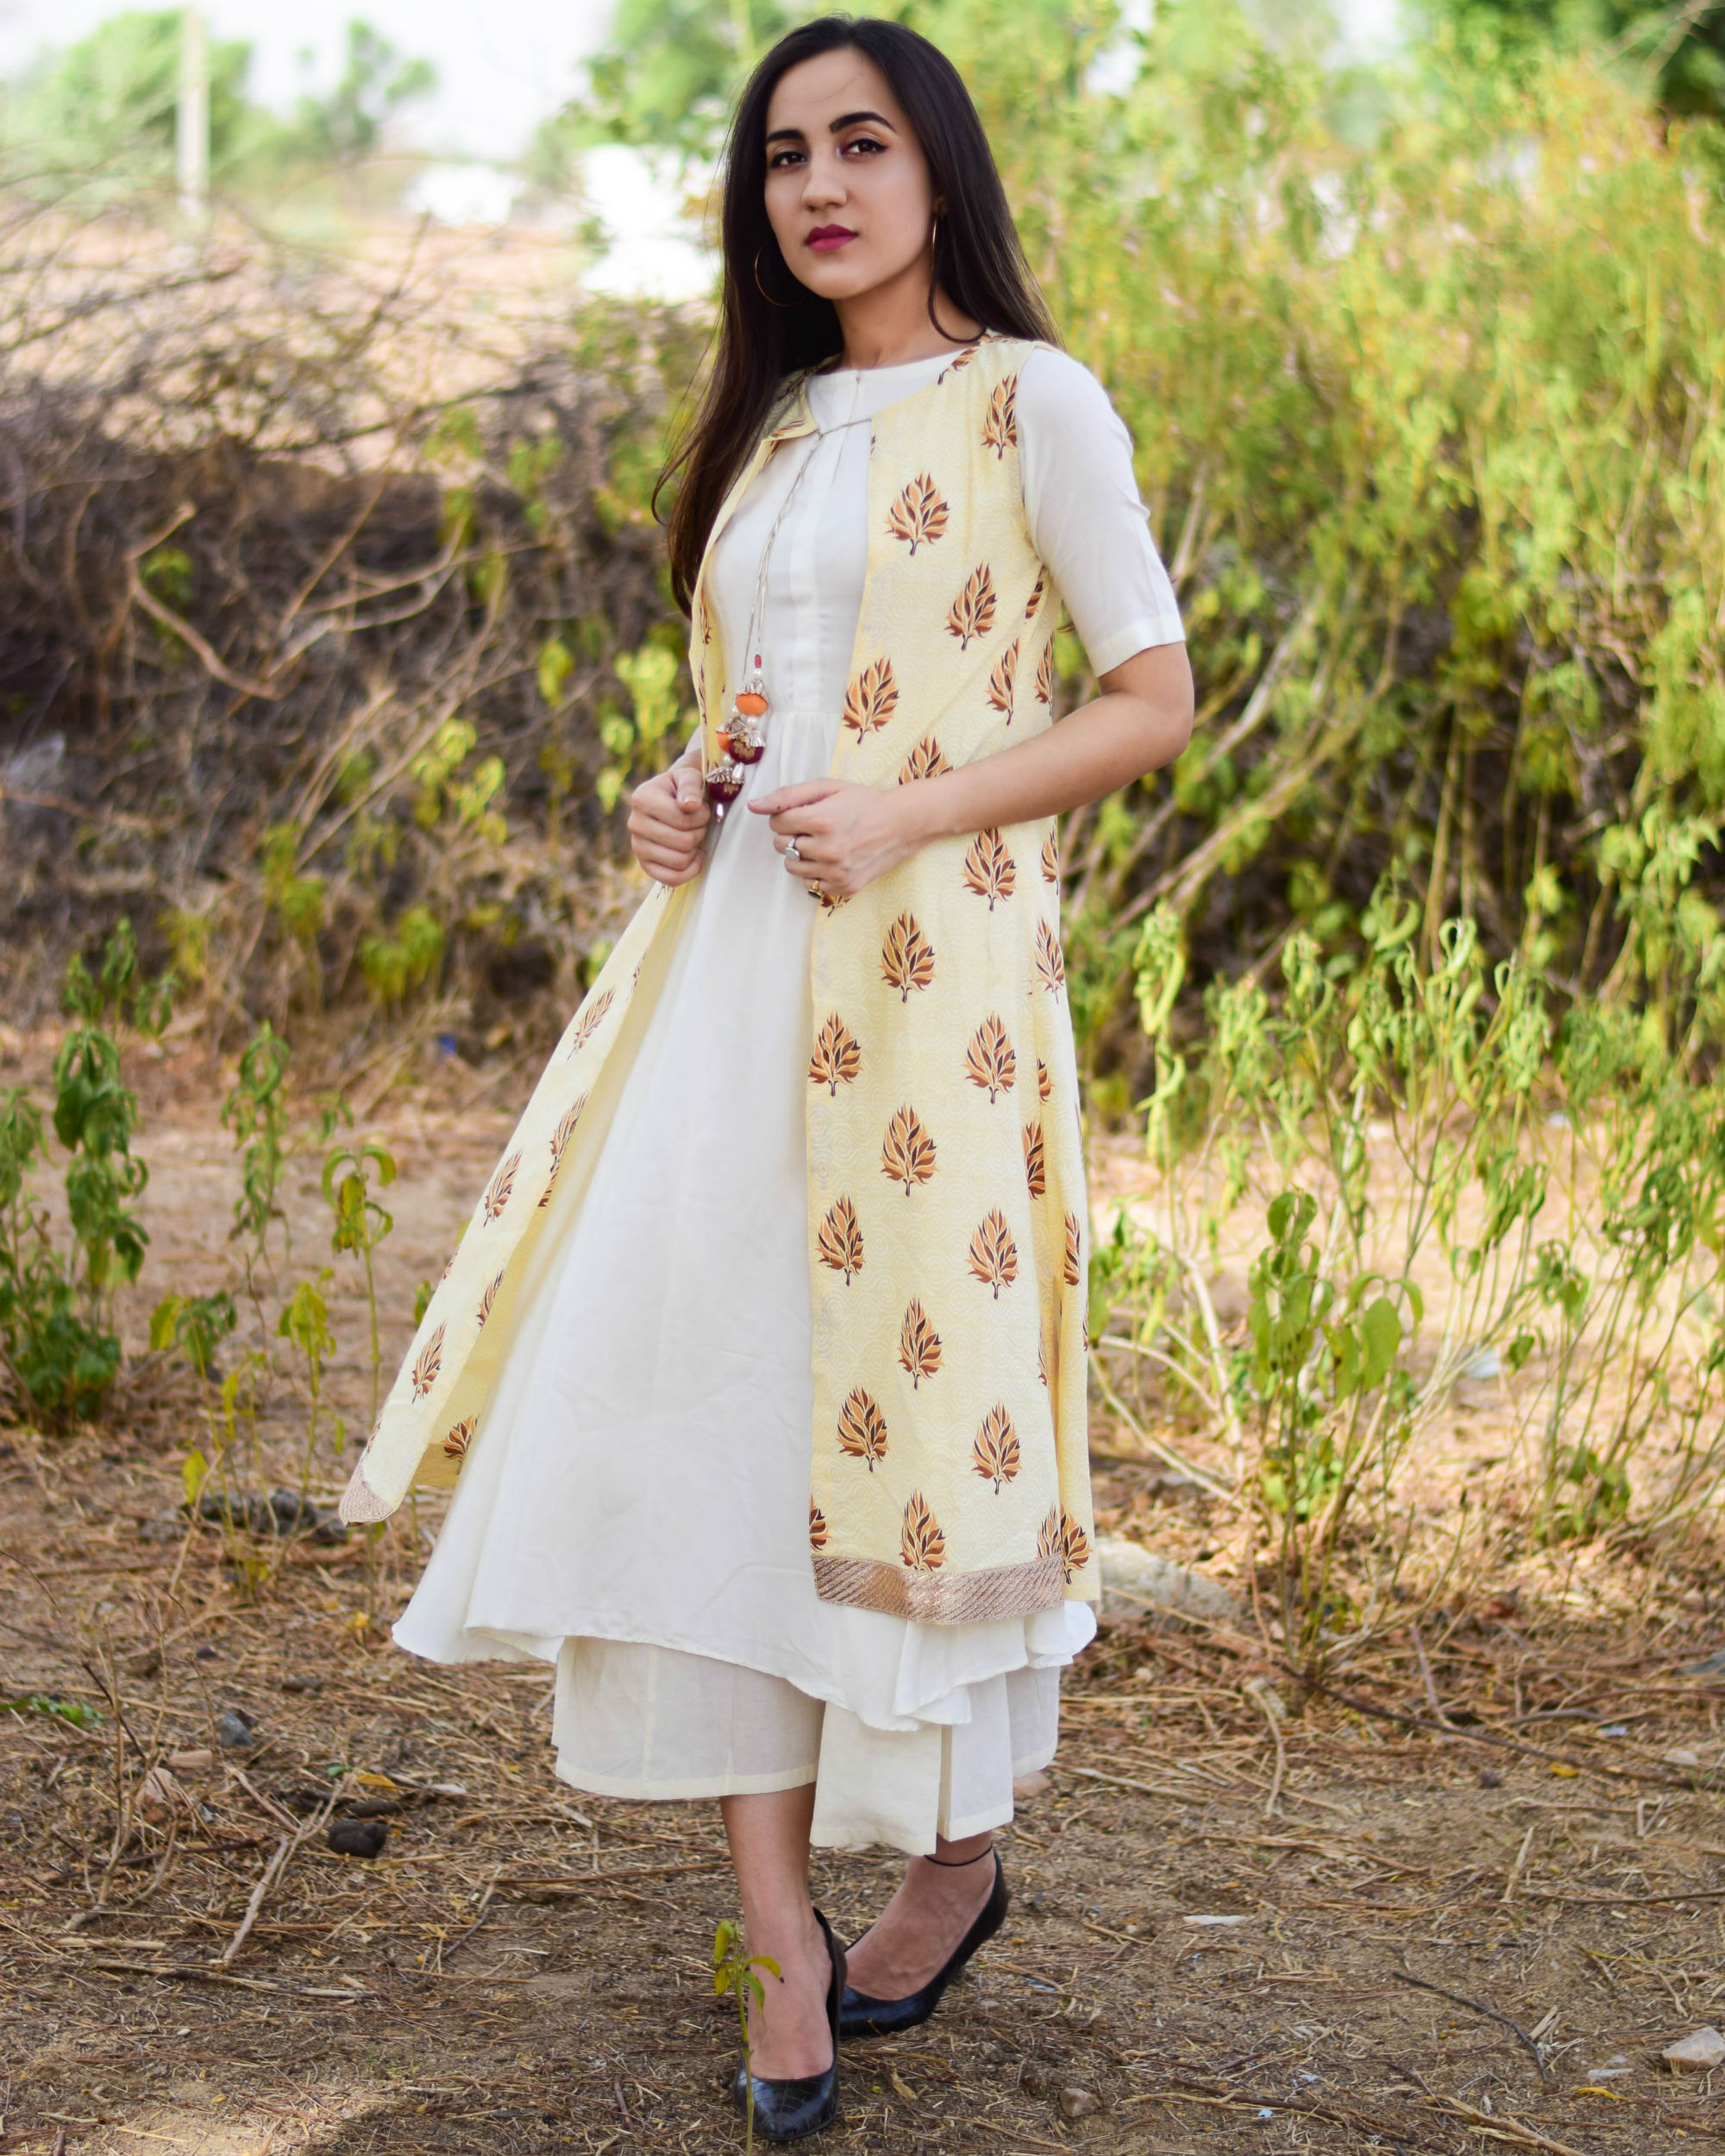 mughal female dress